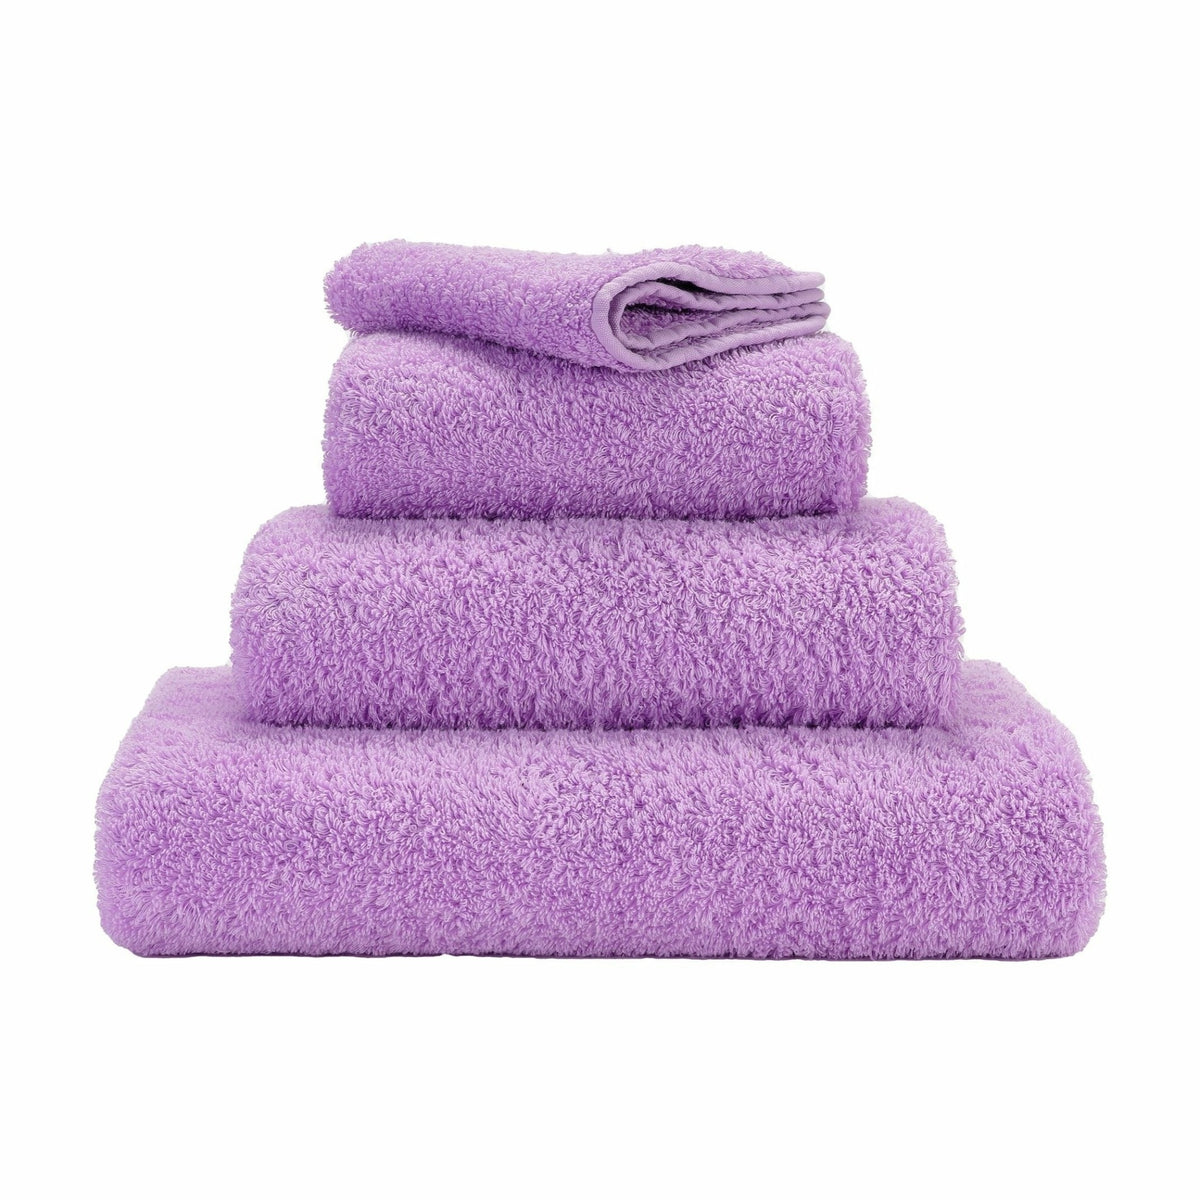 Super-Absorbent Towel